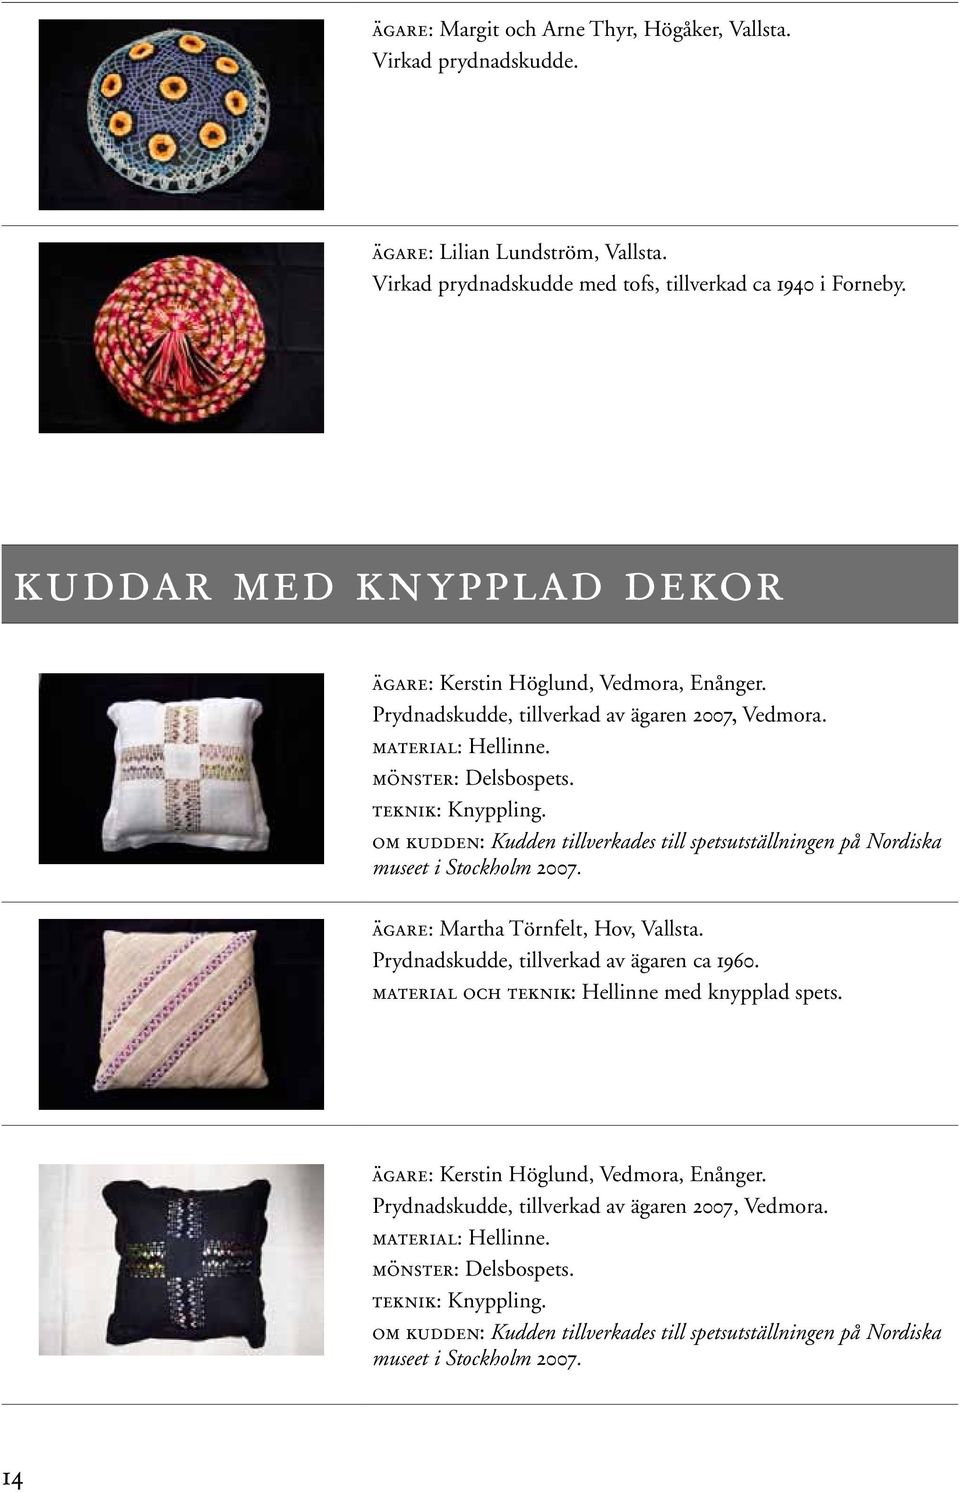 om kudden: Kudden tillverkades till spetsutställningen på Nordiska museet i Stockholm 2007. ägare: Martha Törnfelt, Hov, Vallsta. Prydnadskudde, tillverkad av ägaren ca 1960.